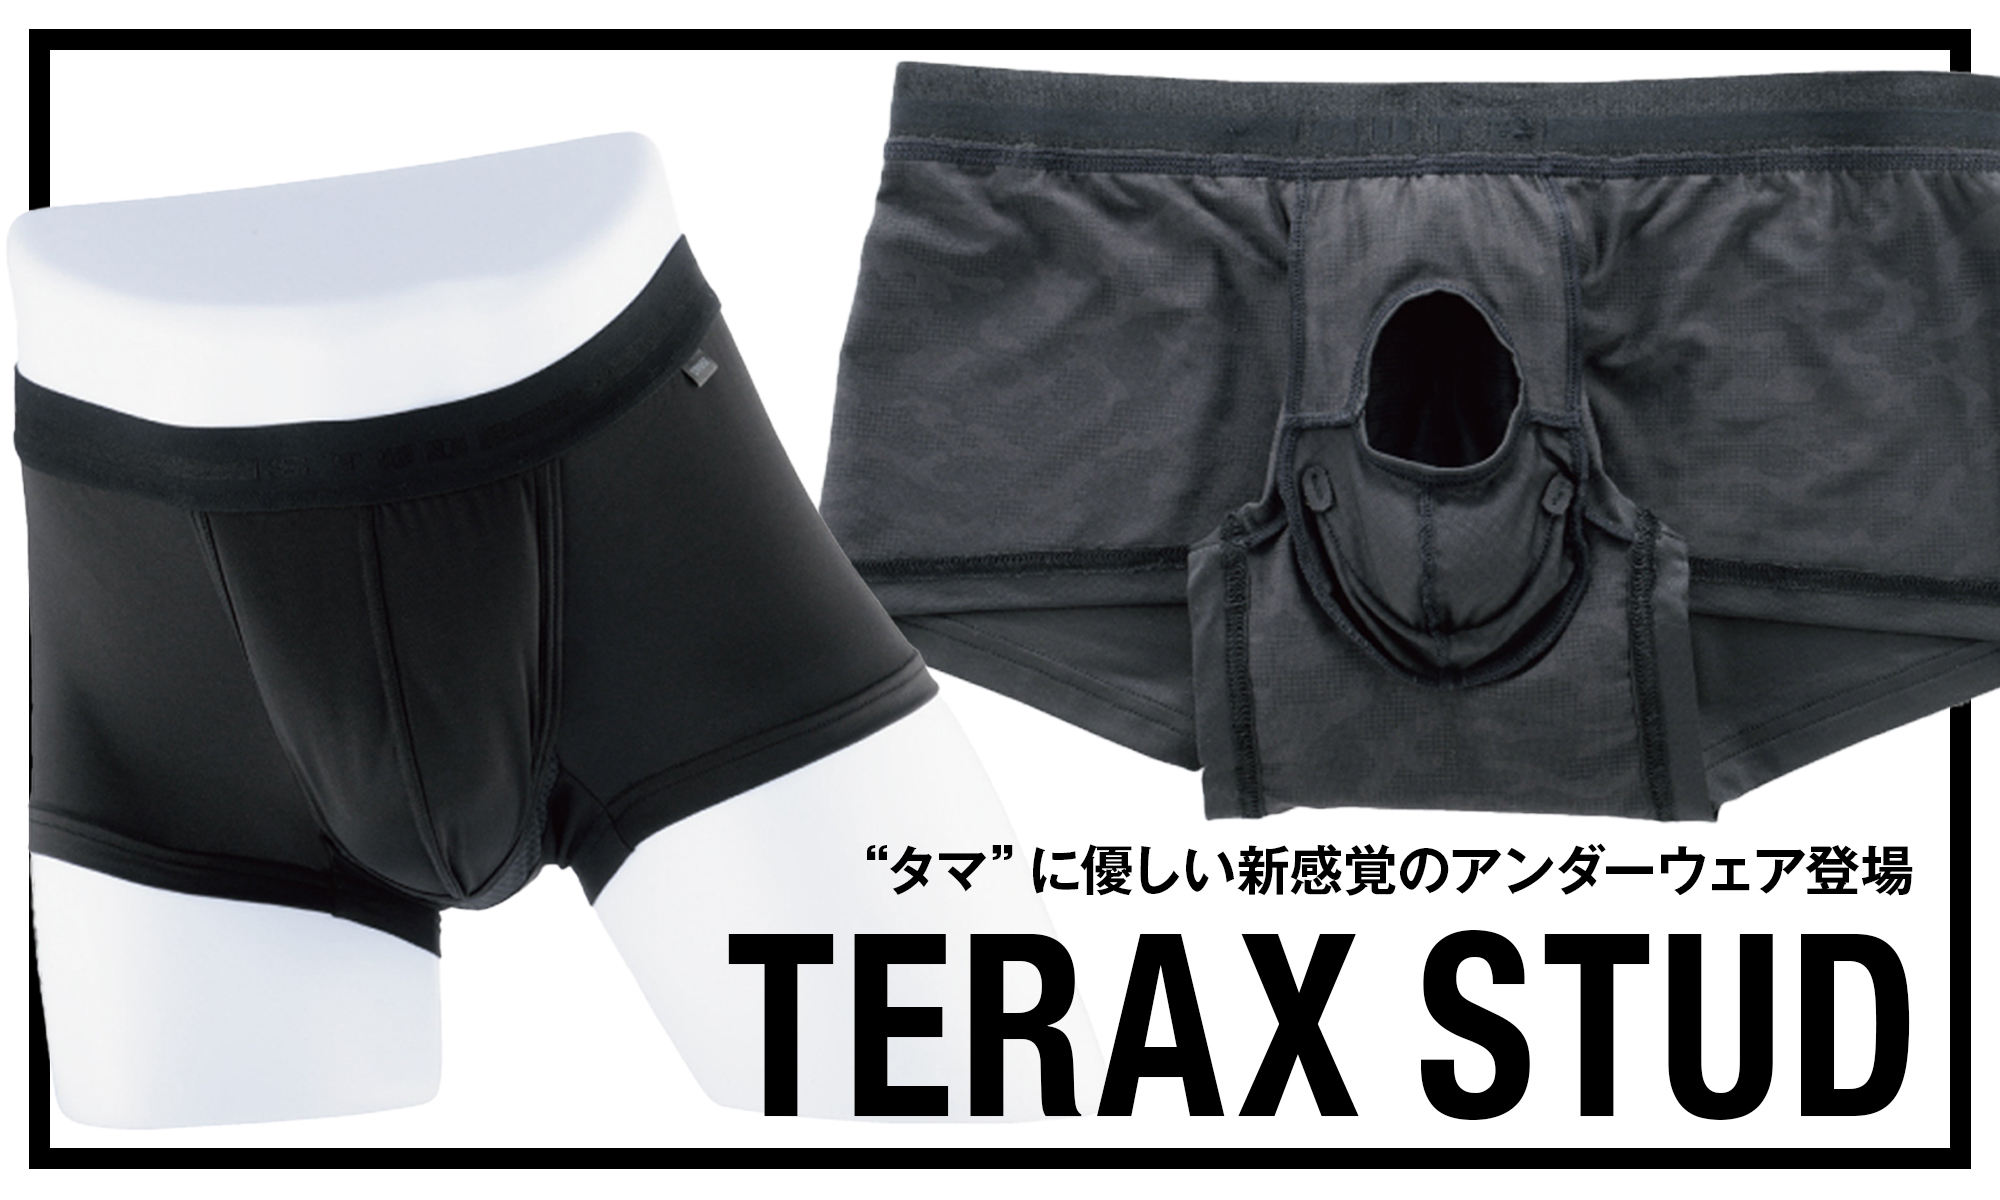 “タマ”に優しい新感覚のアンダーウェア登場 -TERAX STUD-